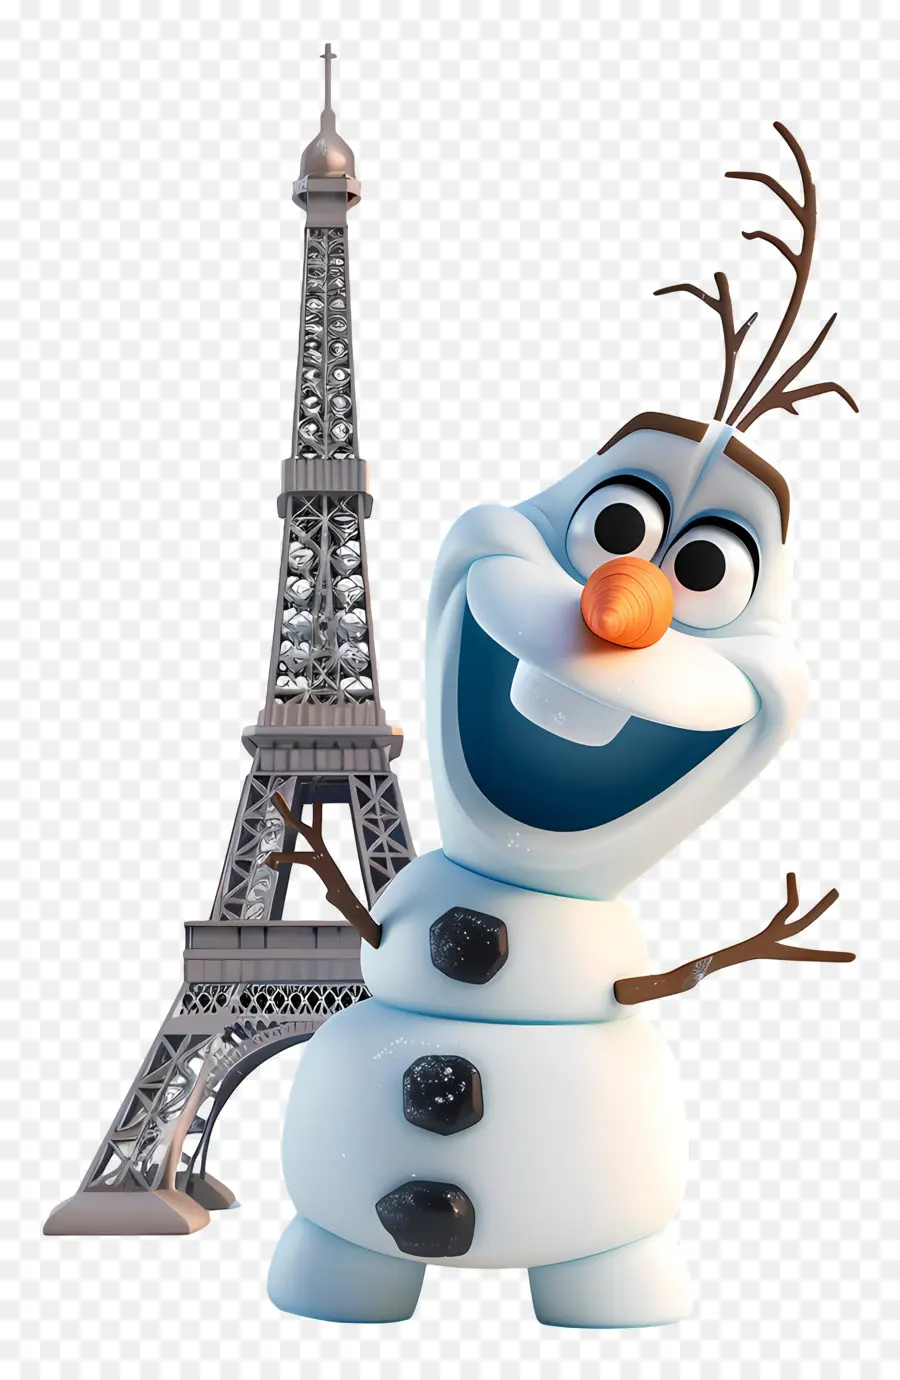 congelati olaf - Personaggio Disney con pinguino alla Torre Eiffel